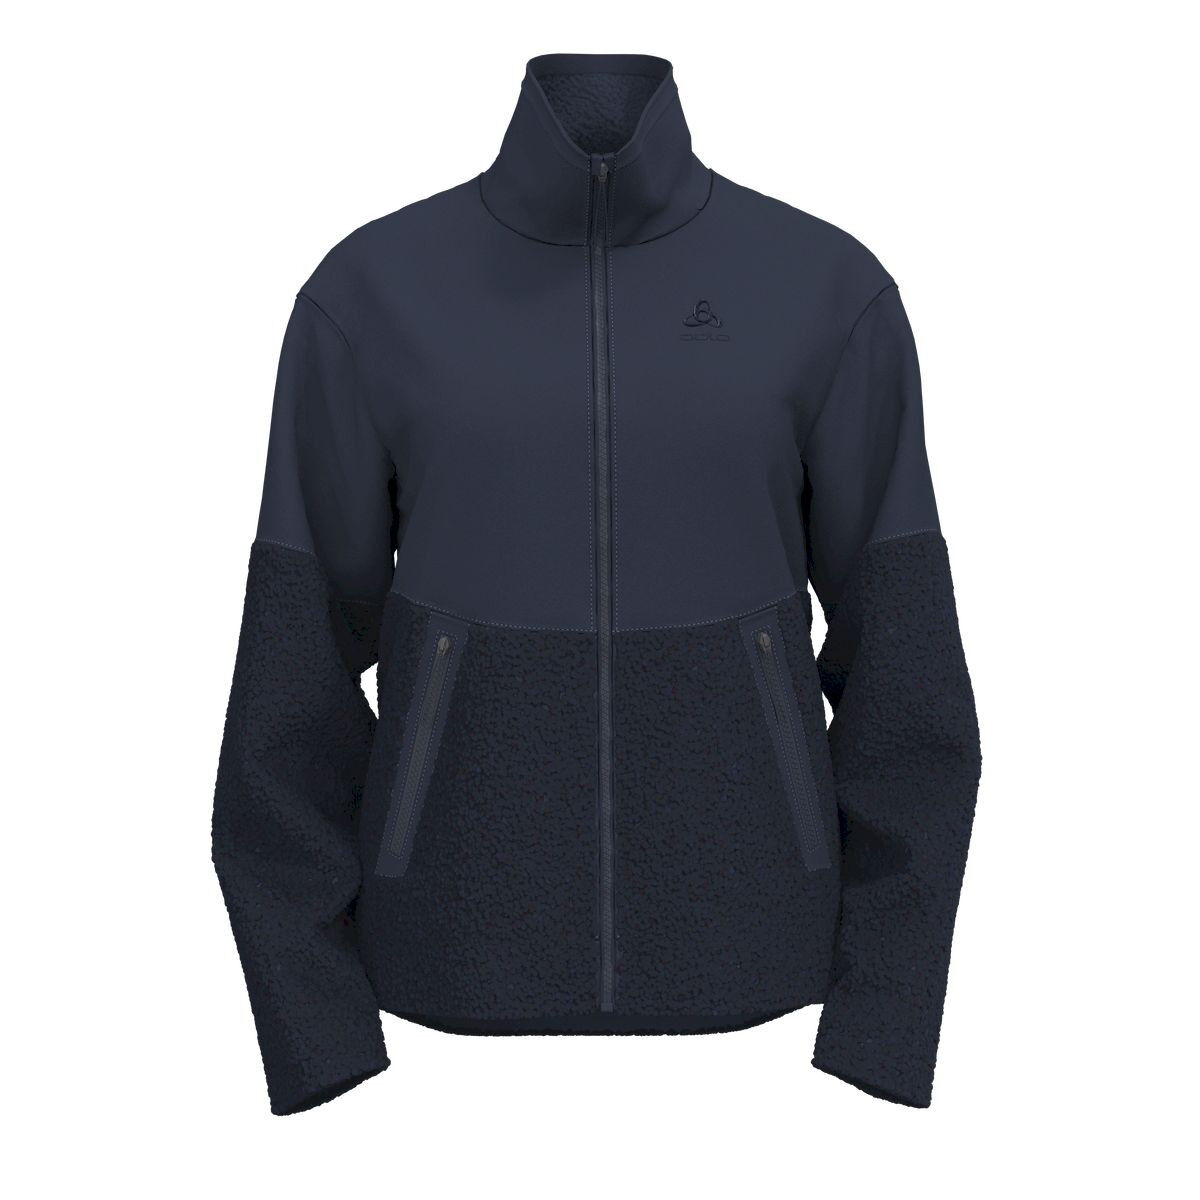 Odlo Halden Cosy - Fleece jacket - Women's